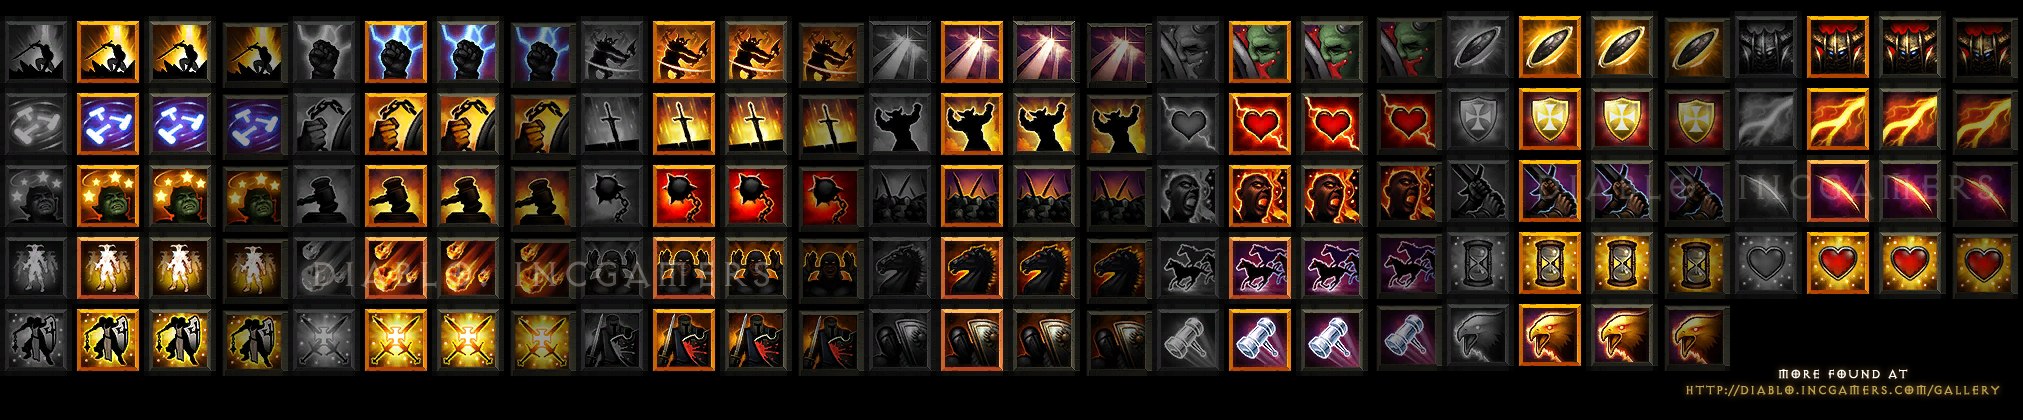 Reaper of Souls Crusader Skill Icons